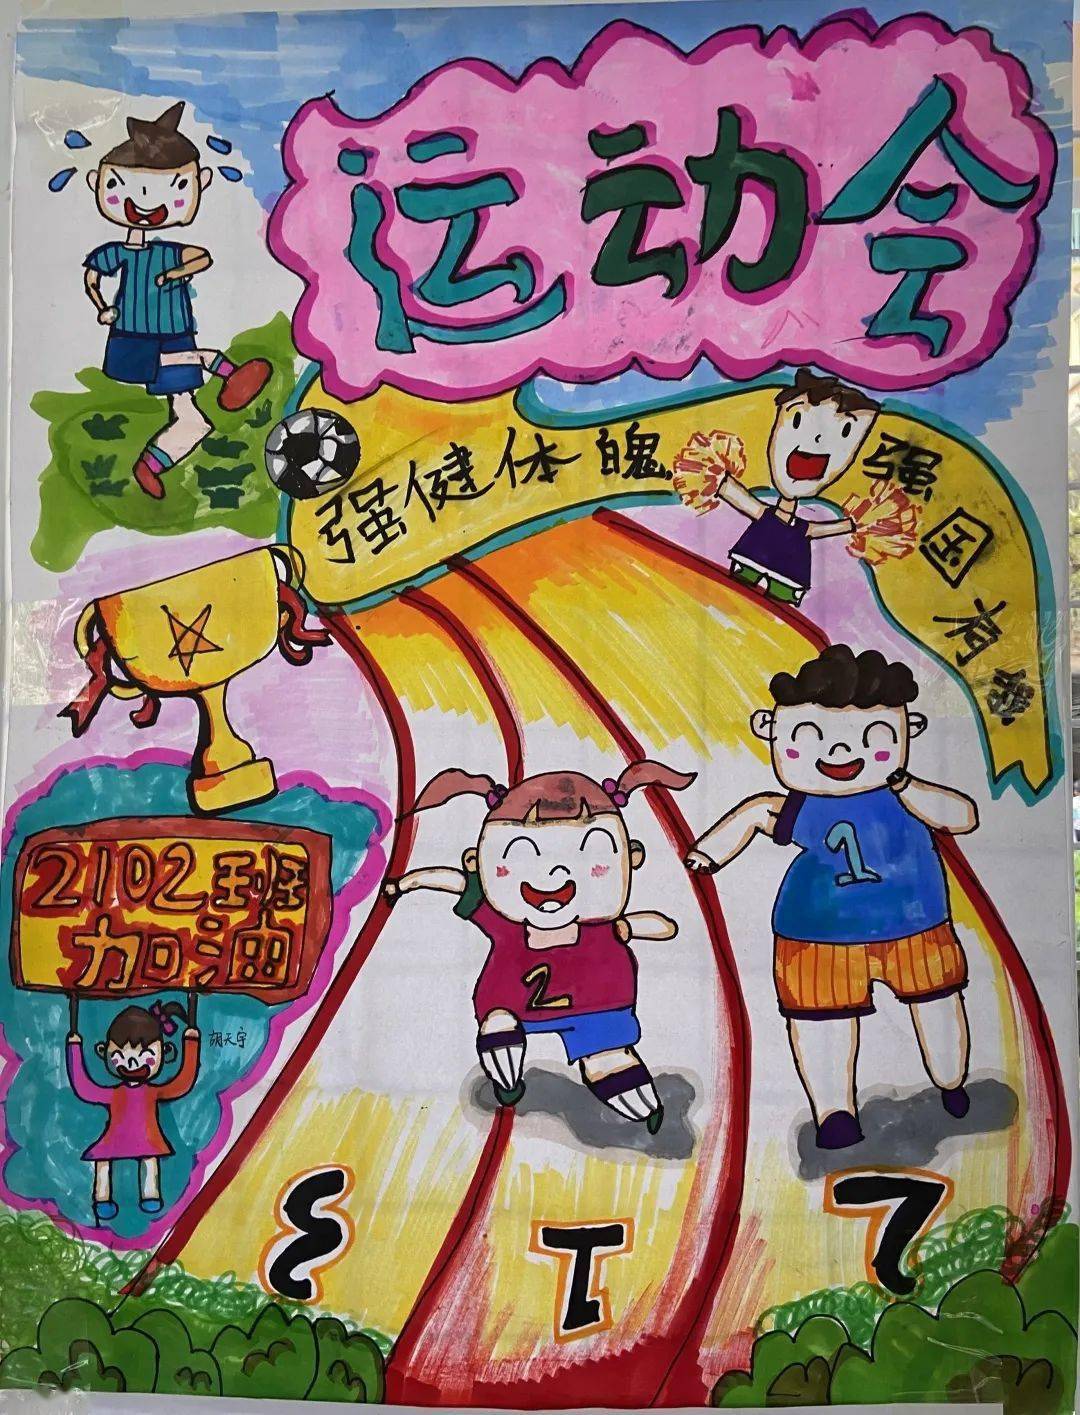 七彩校园手绘律动图画共享快乐运动砂子塘东澜湾小学第七届校运会海报